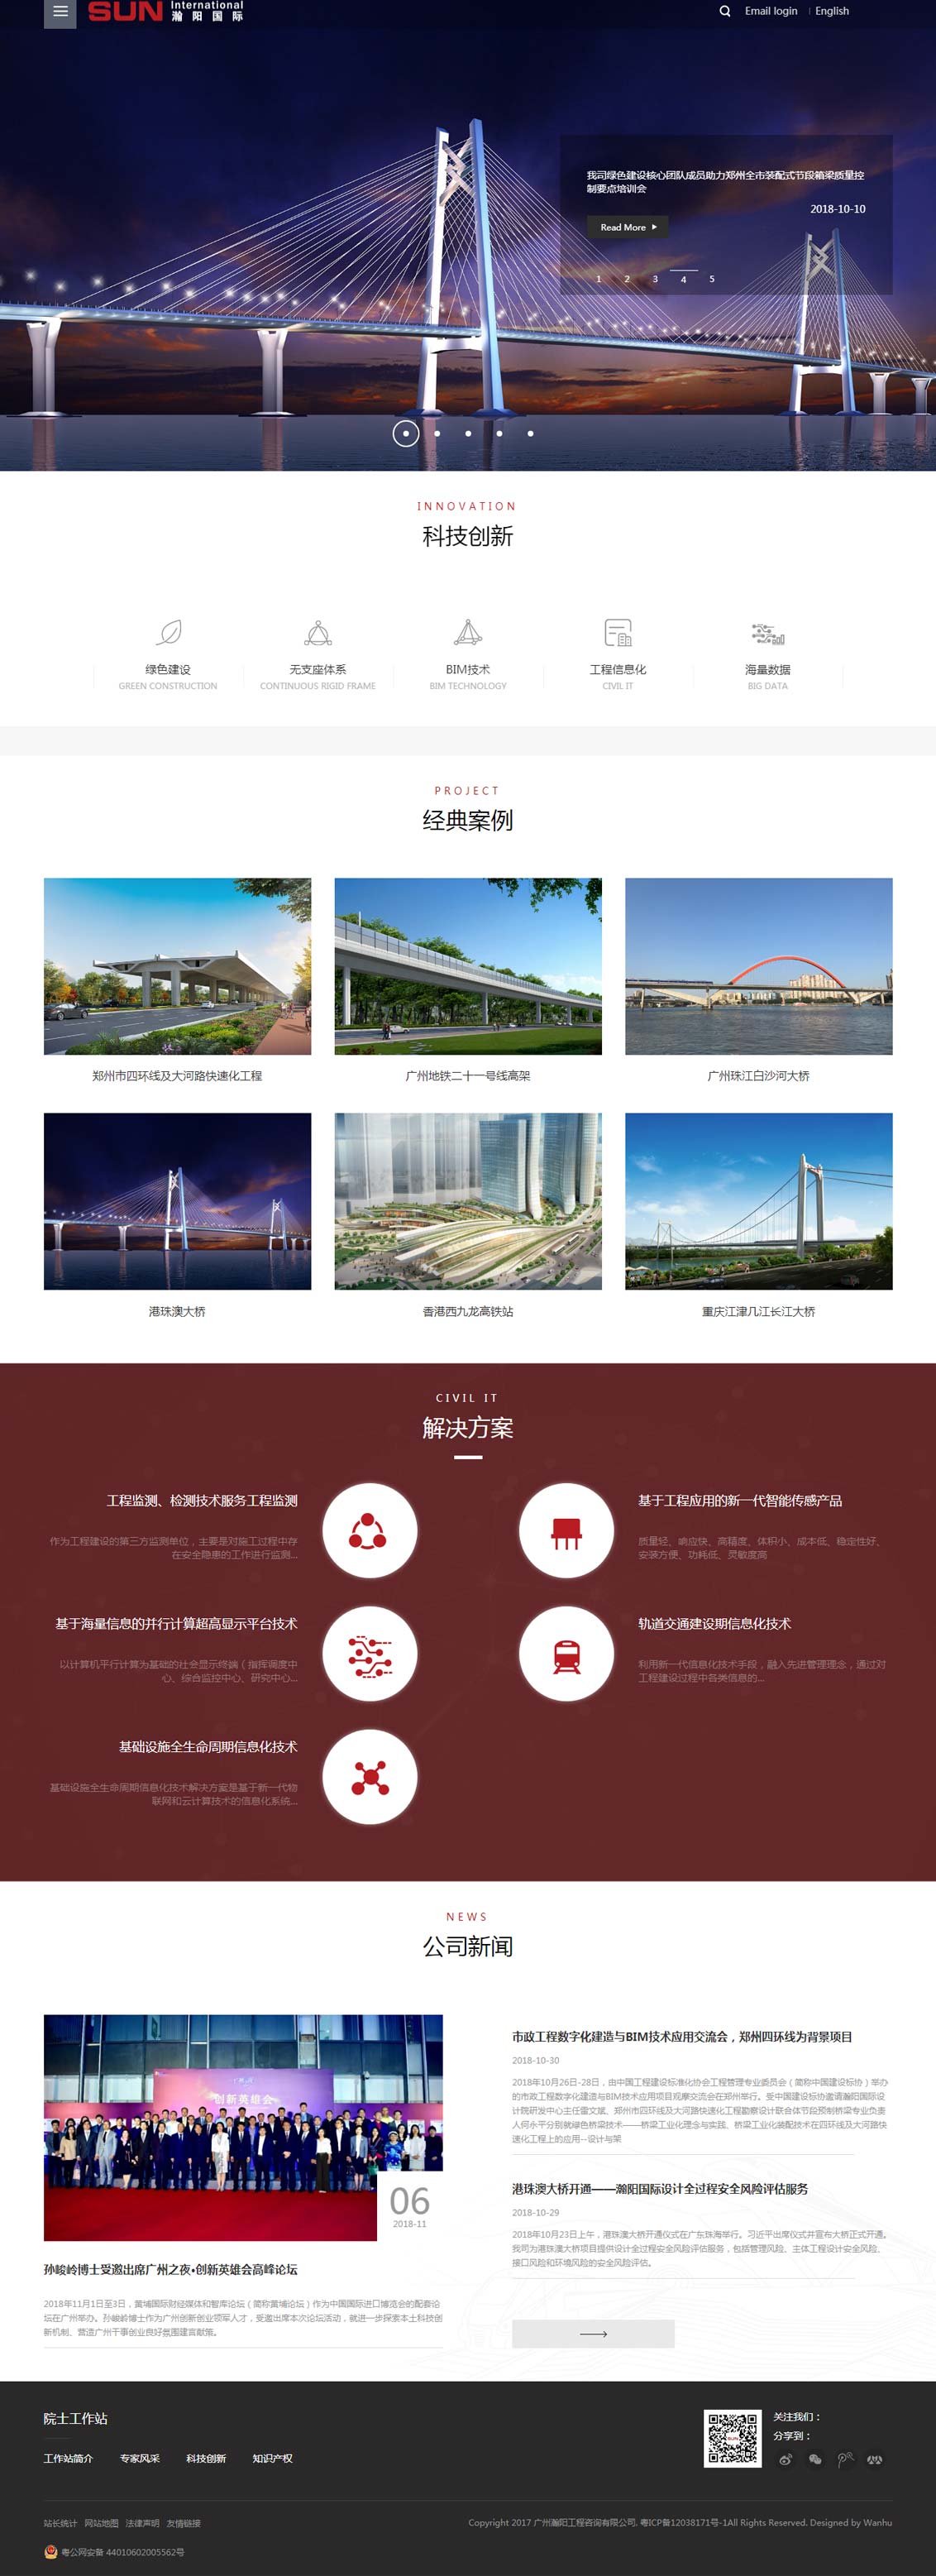 广州瀚阳工程咨询有限公司-万户网络设计制作网站